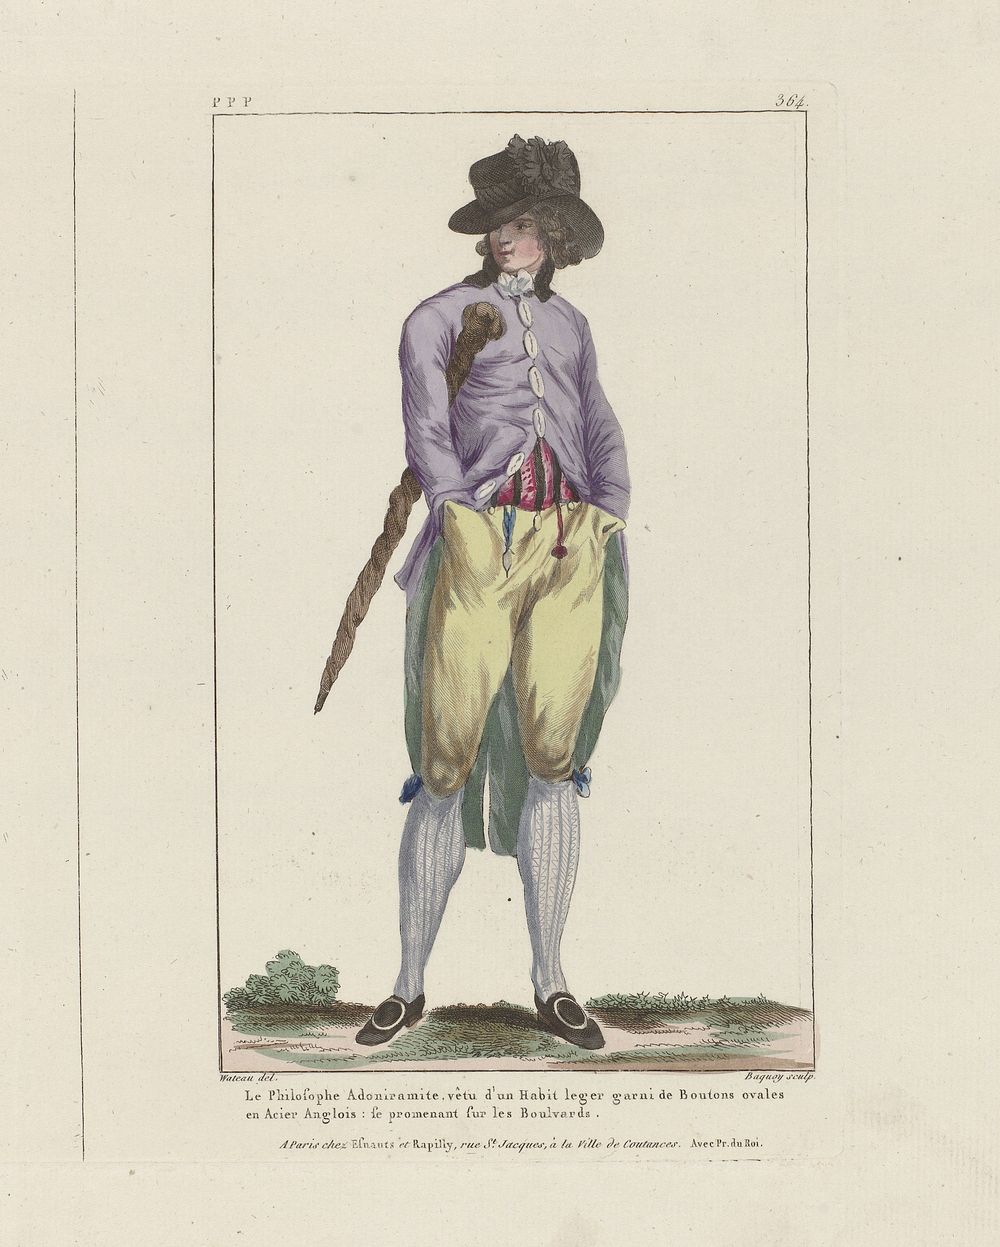 Gallerie des Modes et Costumes Français, 1787, ppp 364 : Le Philosophe Adoniramit (...) (c. 1787) by Pierre Charles Baquoy…